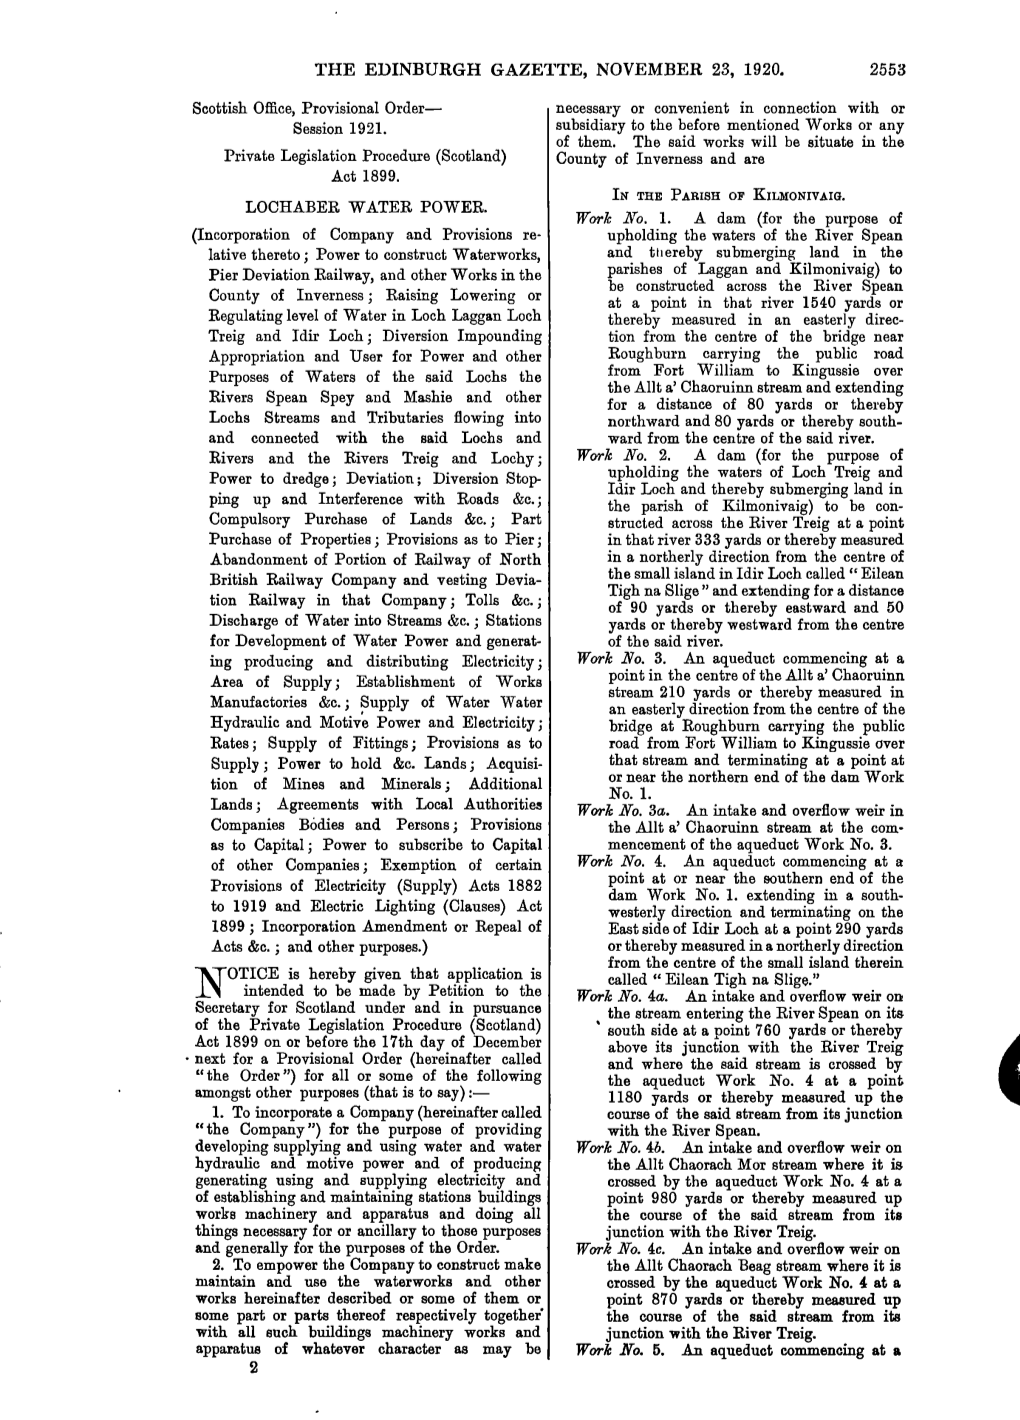 The Edinburgh Gazette, November 23, 1920. 2553